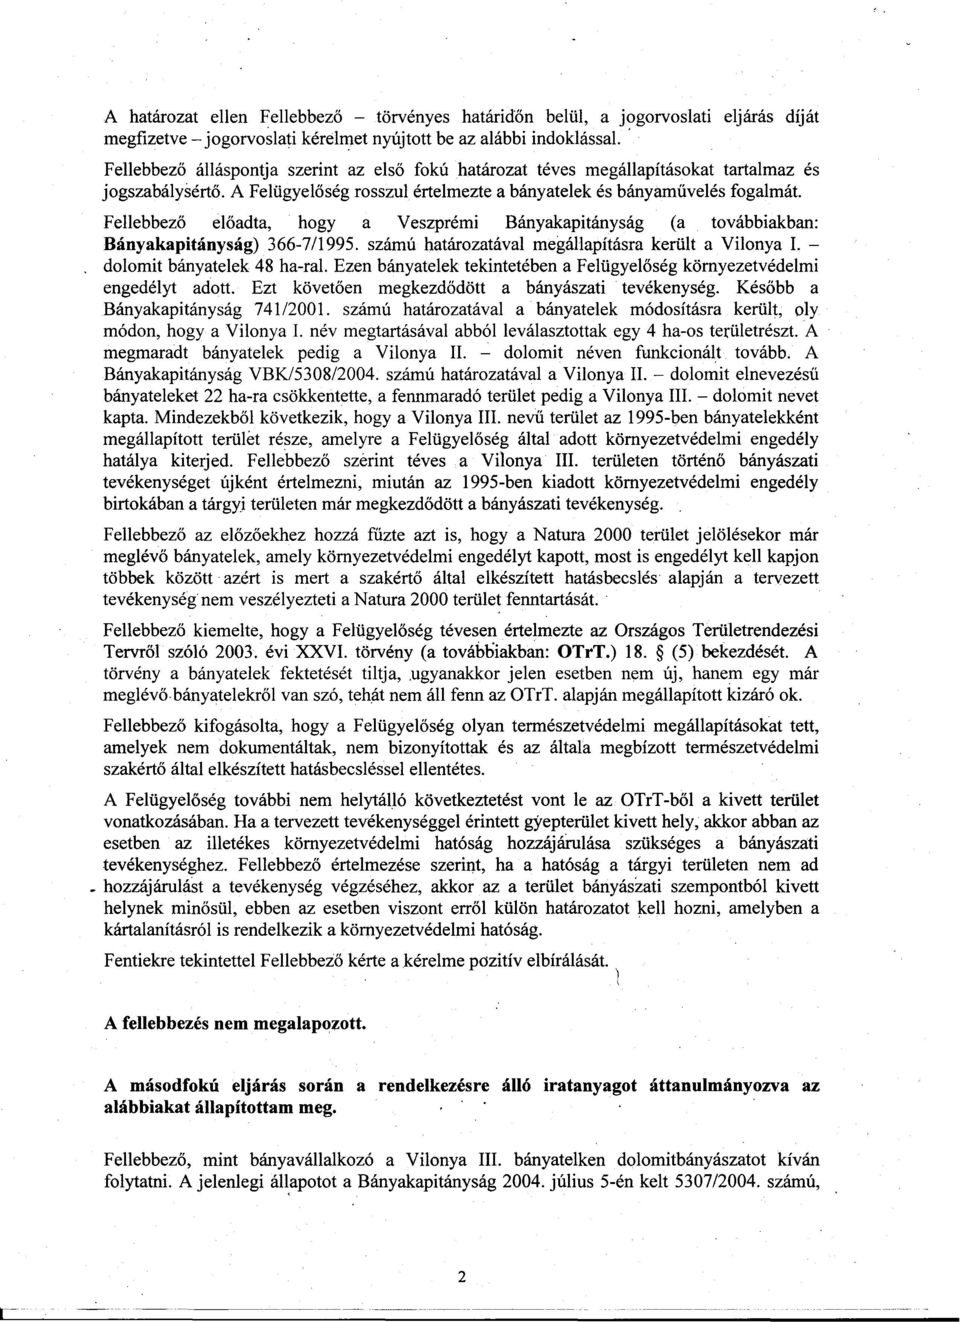 Fellebbezo eloadta, hogy a Veszprémi Bányakapitányság (a továbbiakban: Bányakapitányság) 366-7/1995. számú határozatával megállapításra került a Vilonya 1. dolomit bányatelek 48 ha-ral.